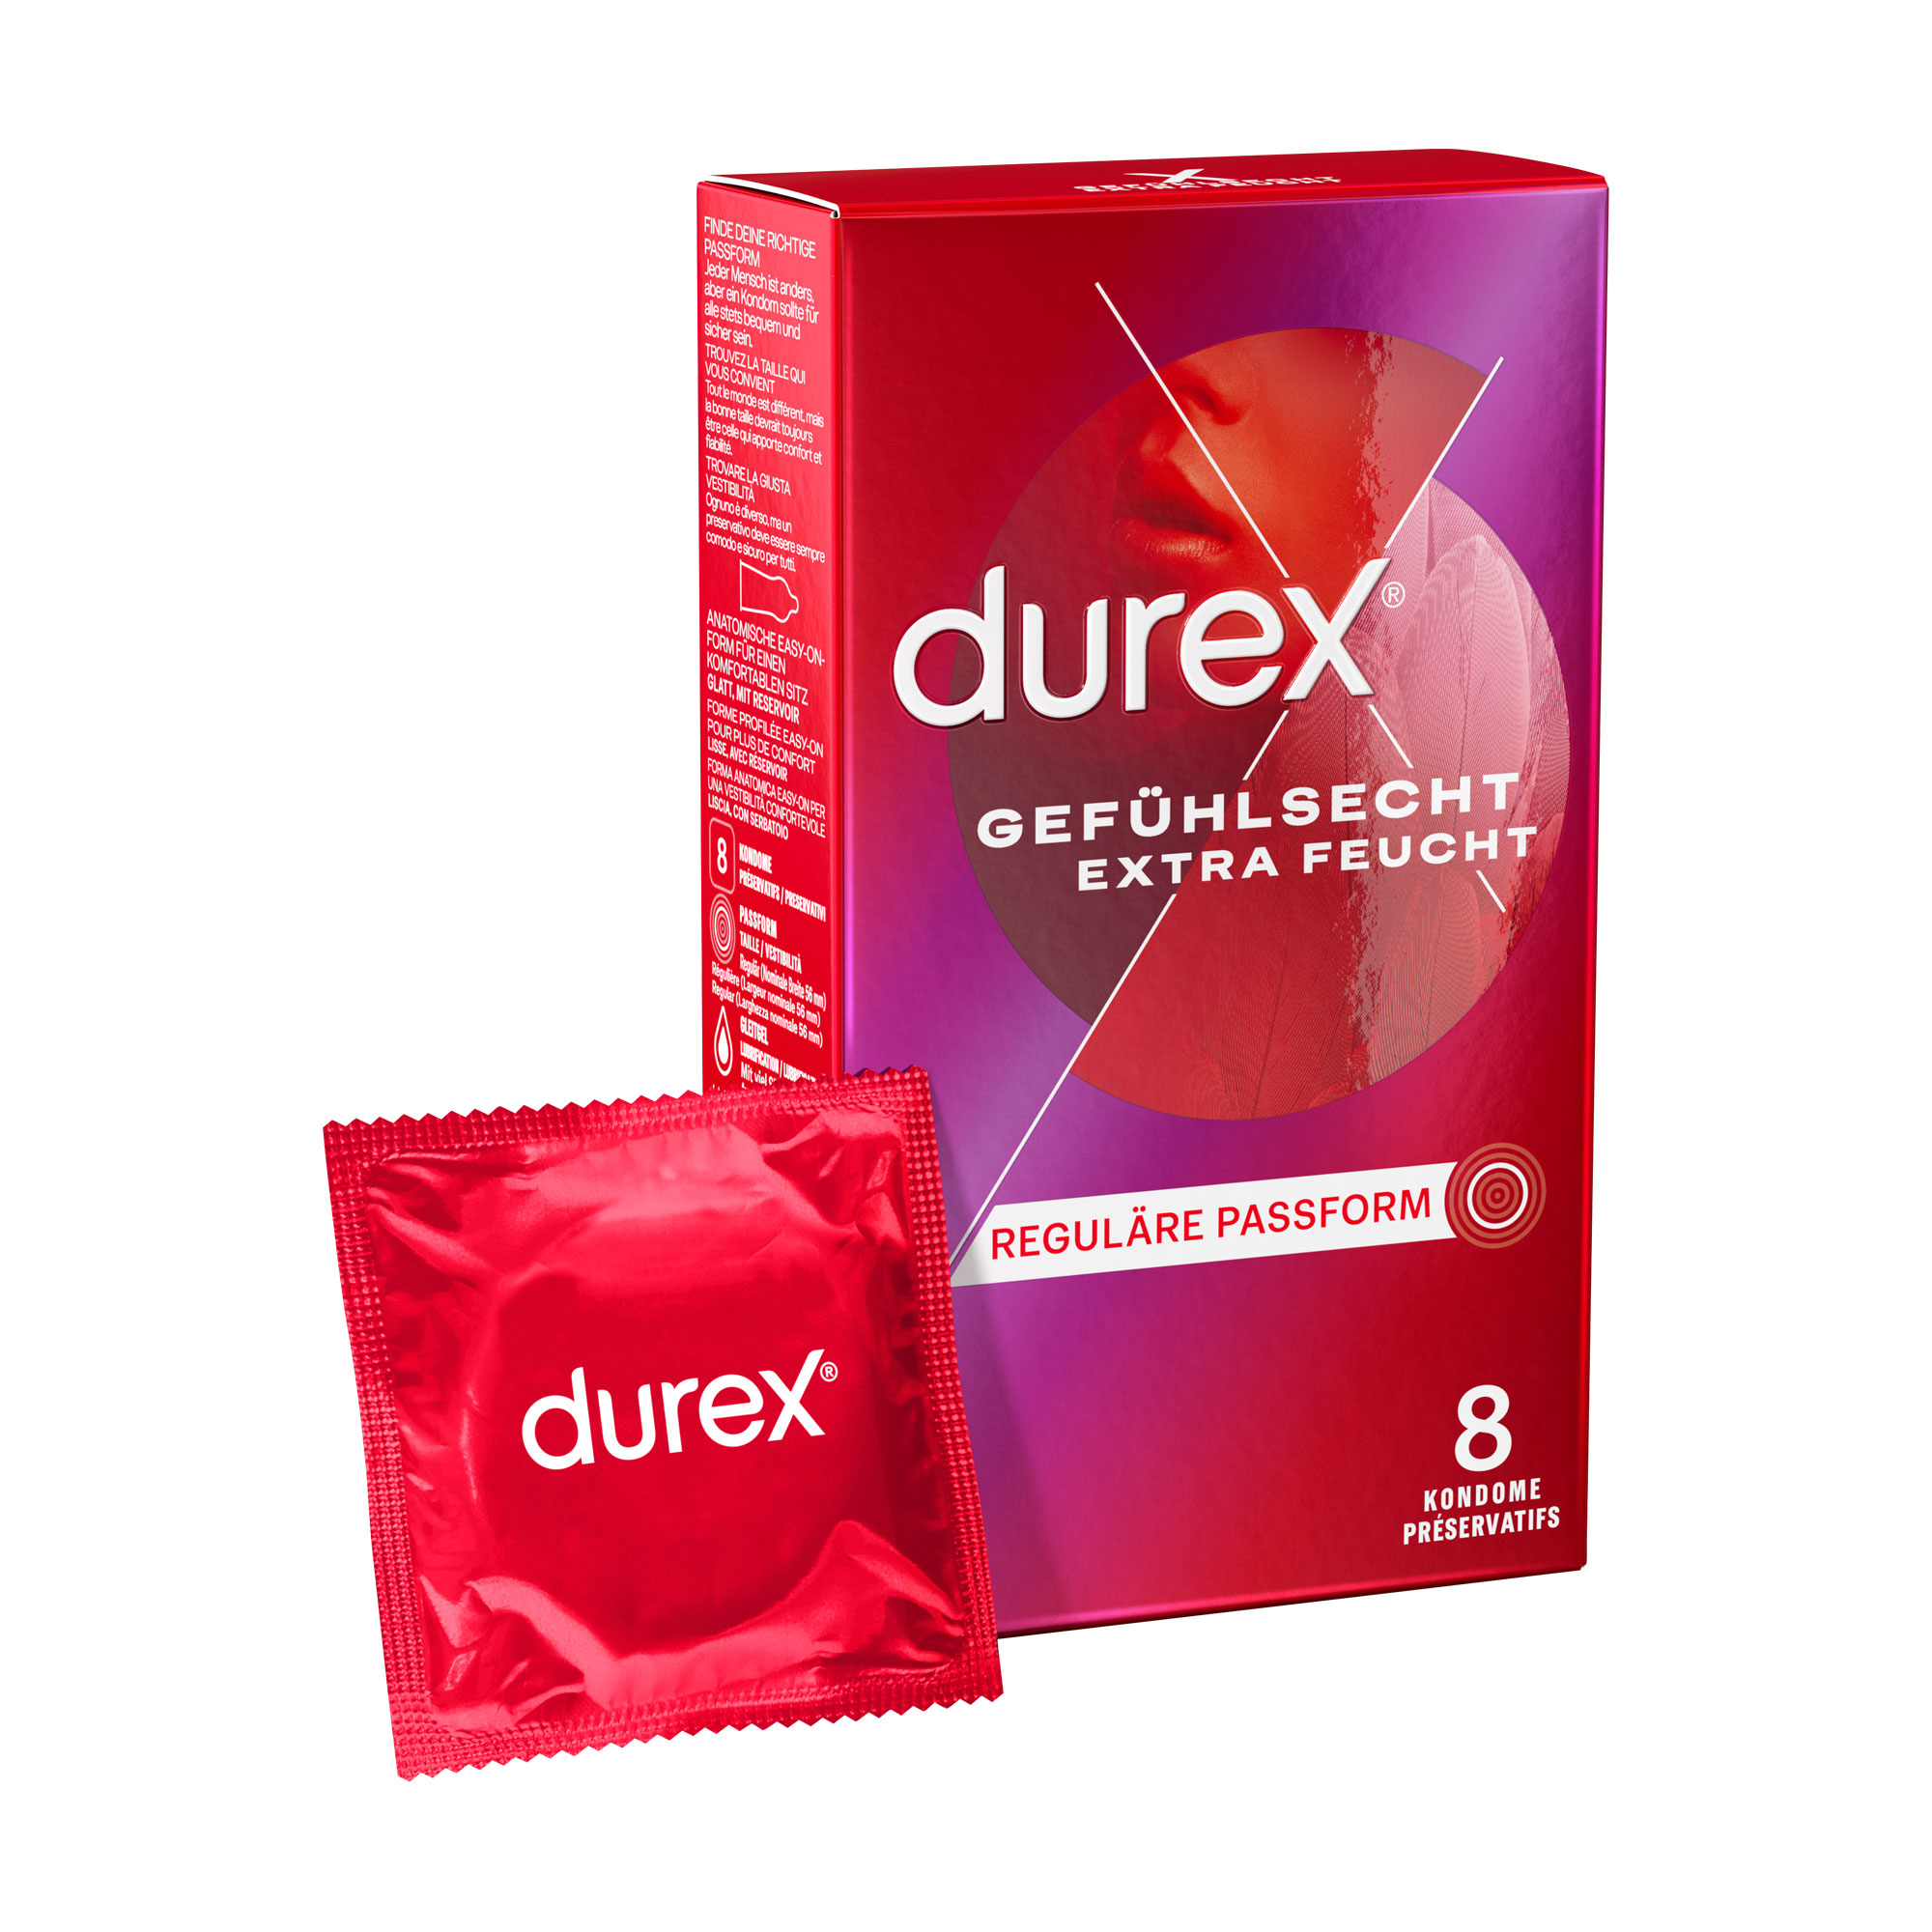 Dünne Kondome für ein intensives Gefühl. Mit extra Gleitgel.